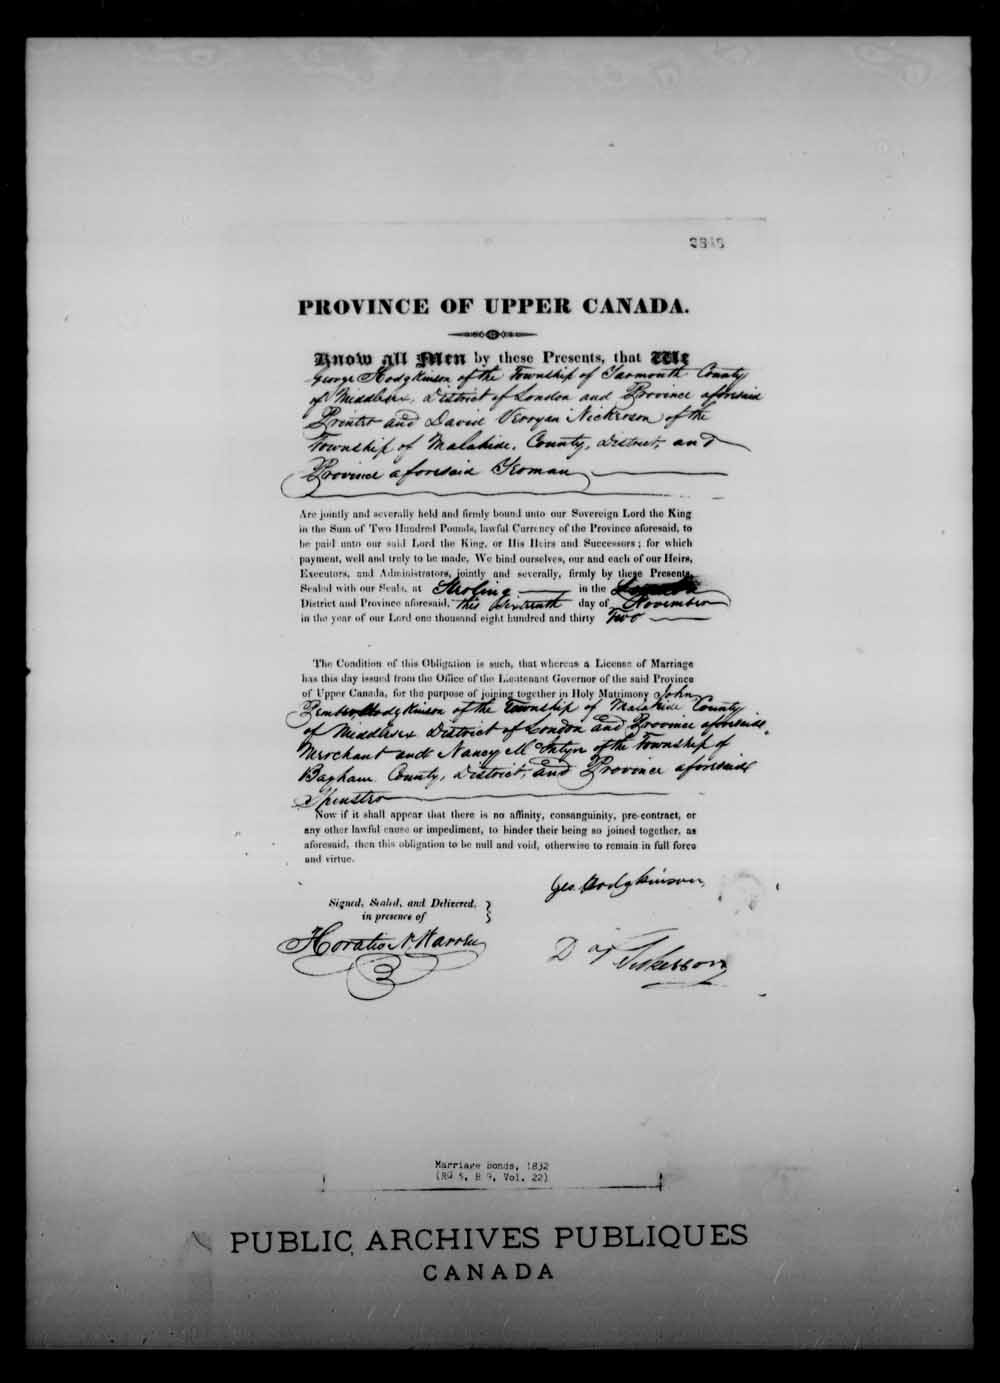 Page numérisé de Cautionnements de mariages pour le Haut-Canada et le Bas-Canada (1779-1865) pour l'image numéro: e008218061